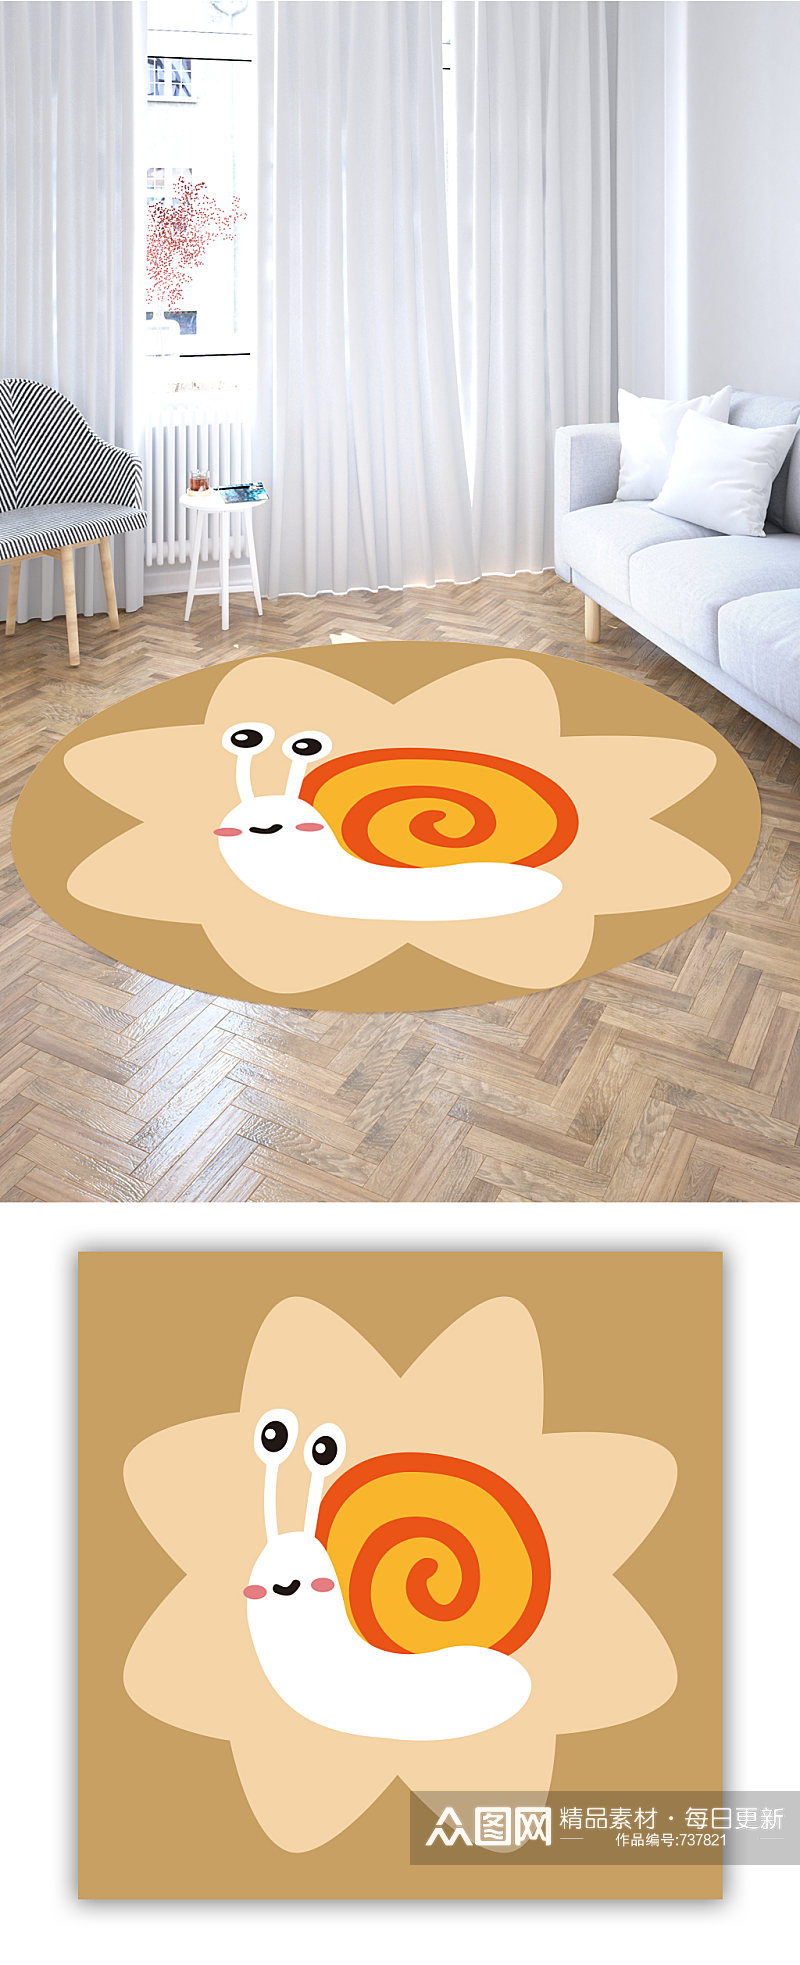 圆形地毯手绘蜗牛素材